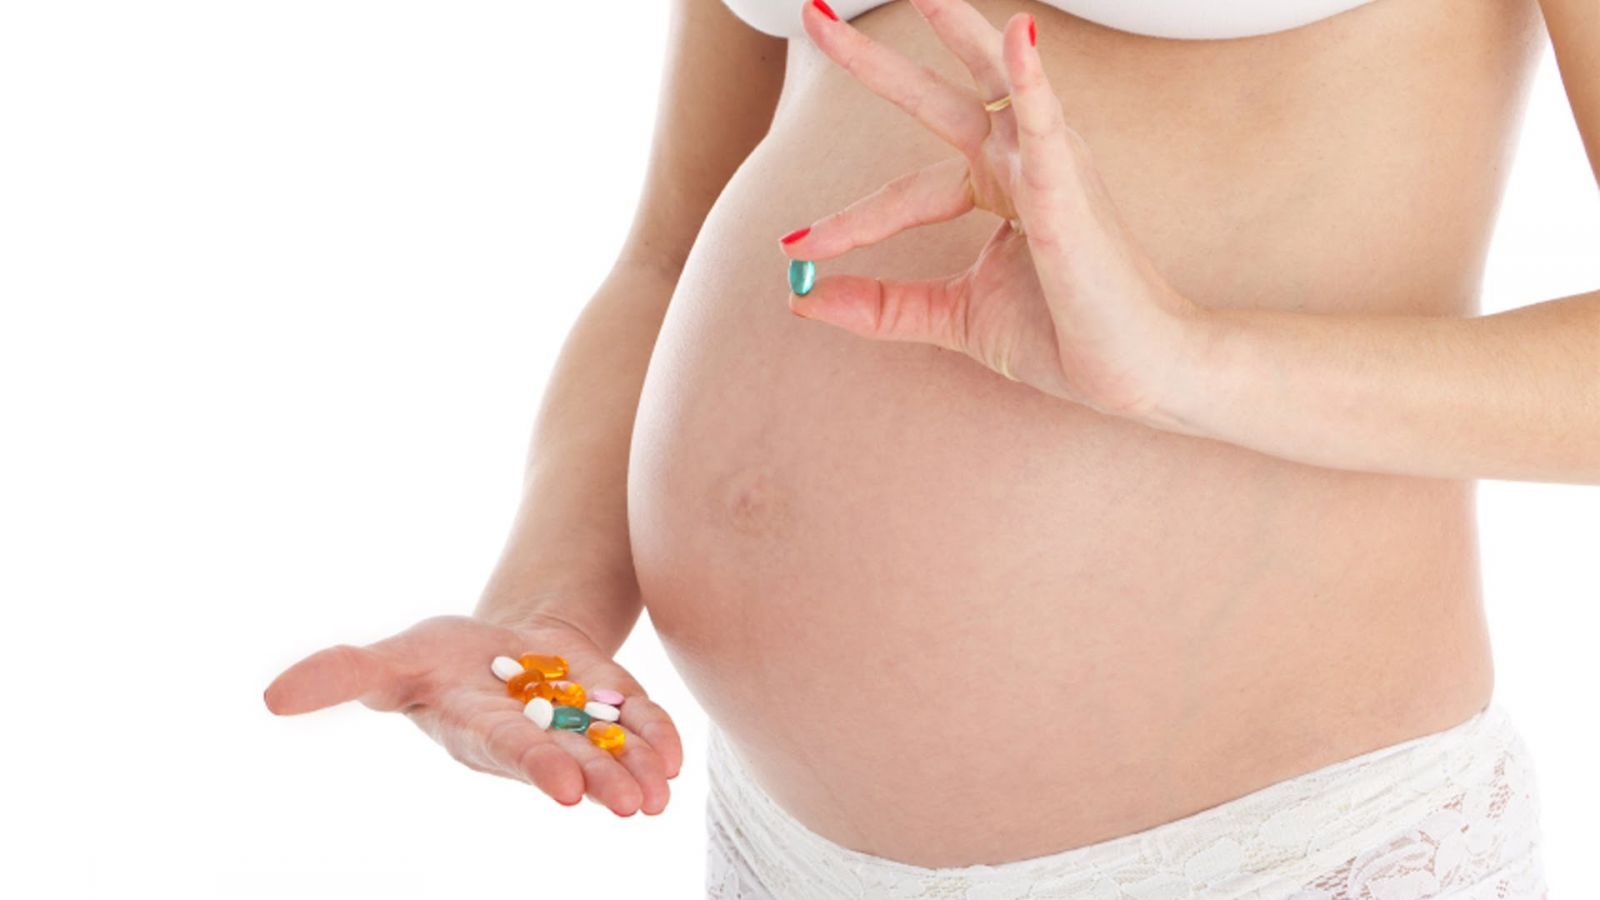 Какие 5 мазей можно использовать при беременности, если болит спина?